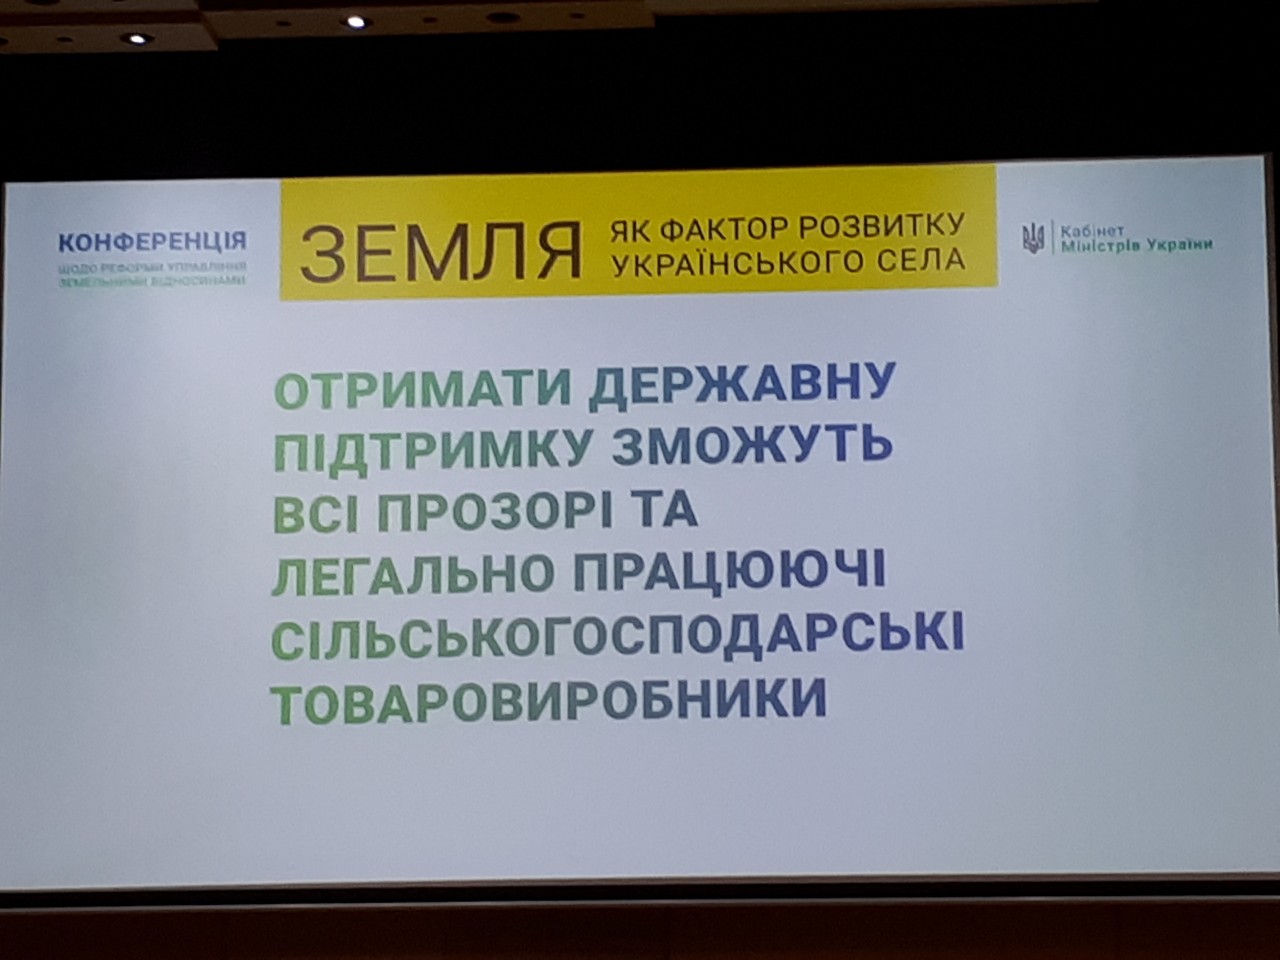 Додатково конференція щодо реформи управління земельними відносинами «Земля як фактор розвитку українського села» 8